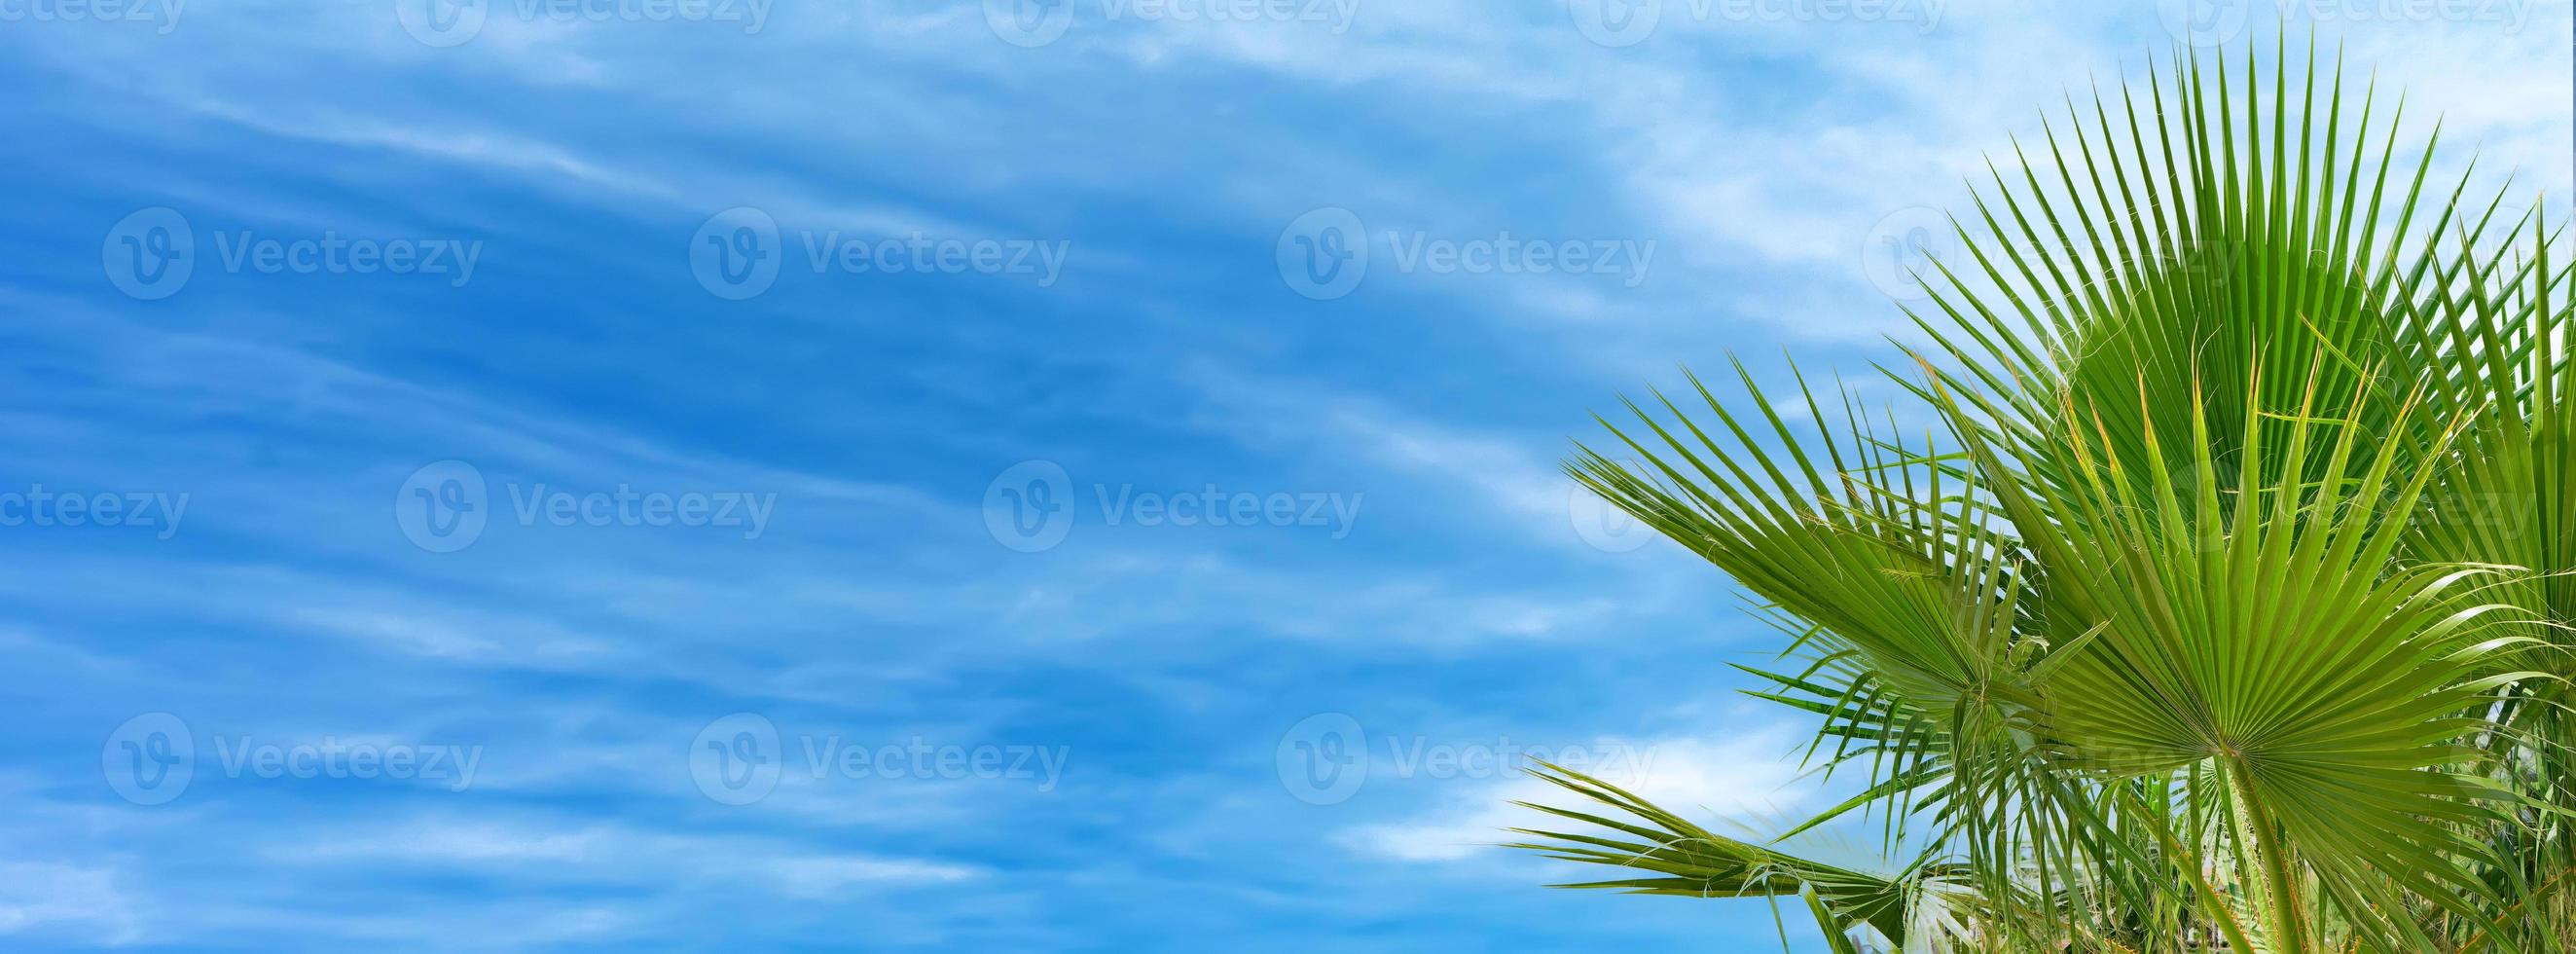 banner con hojas de palmera contra el cielo azul nublado, fondo tropical. foto